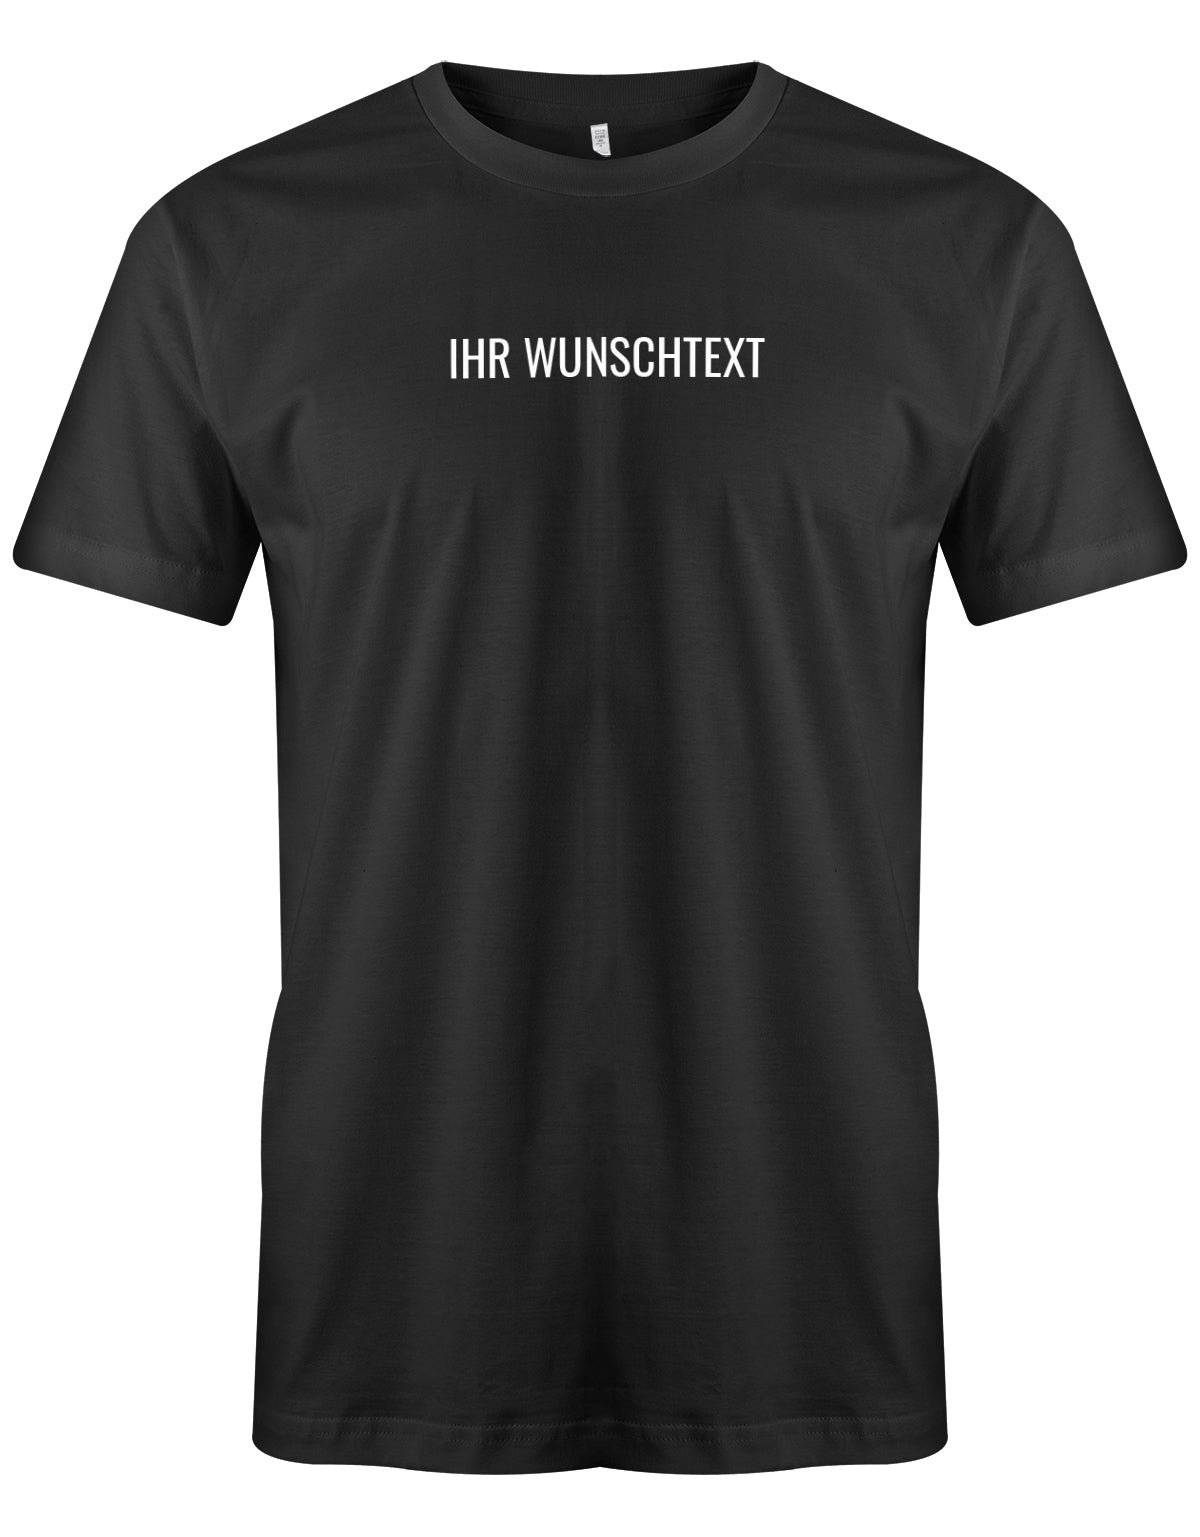 Männer Tshirt mit Wunschtext. Minimalistisches Design. Schwarz